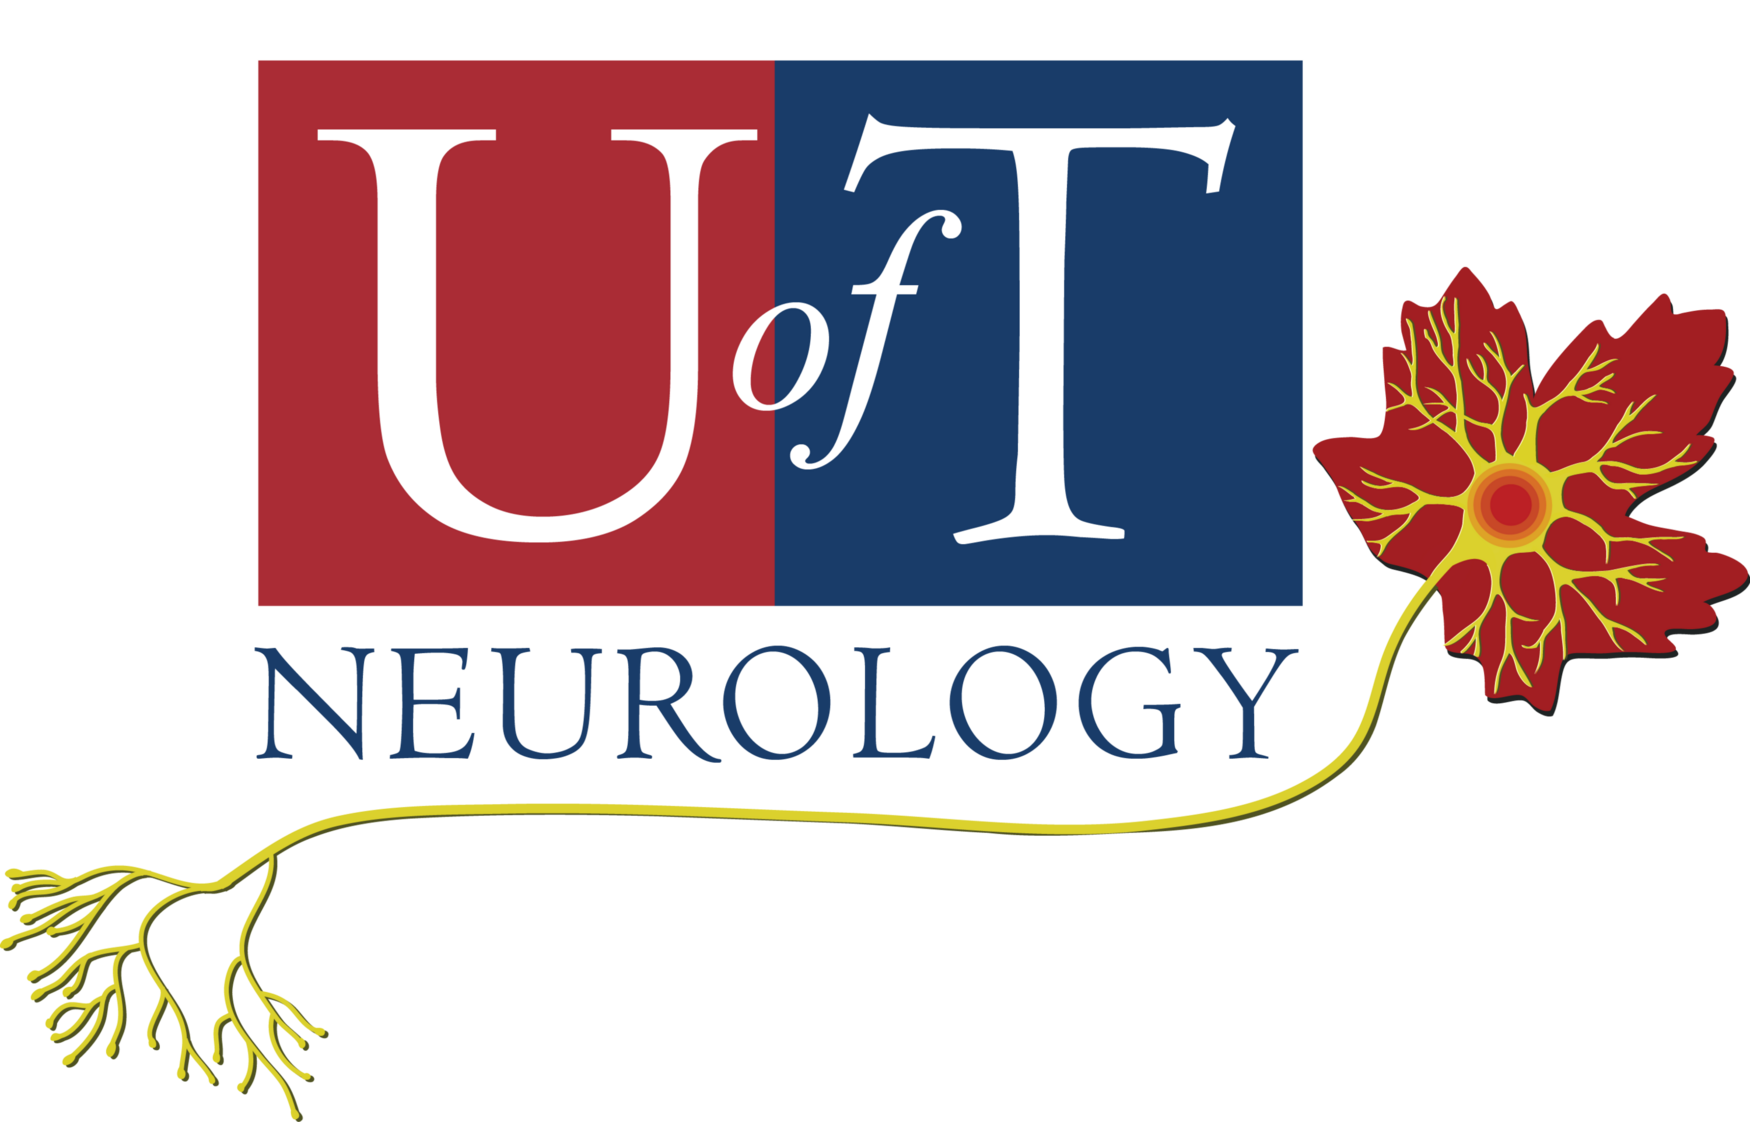 neurology logo